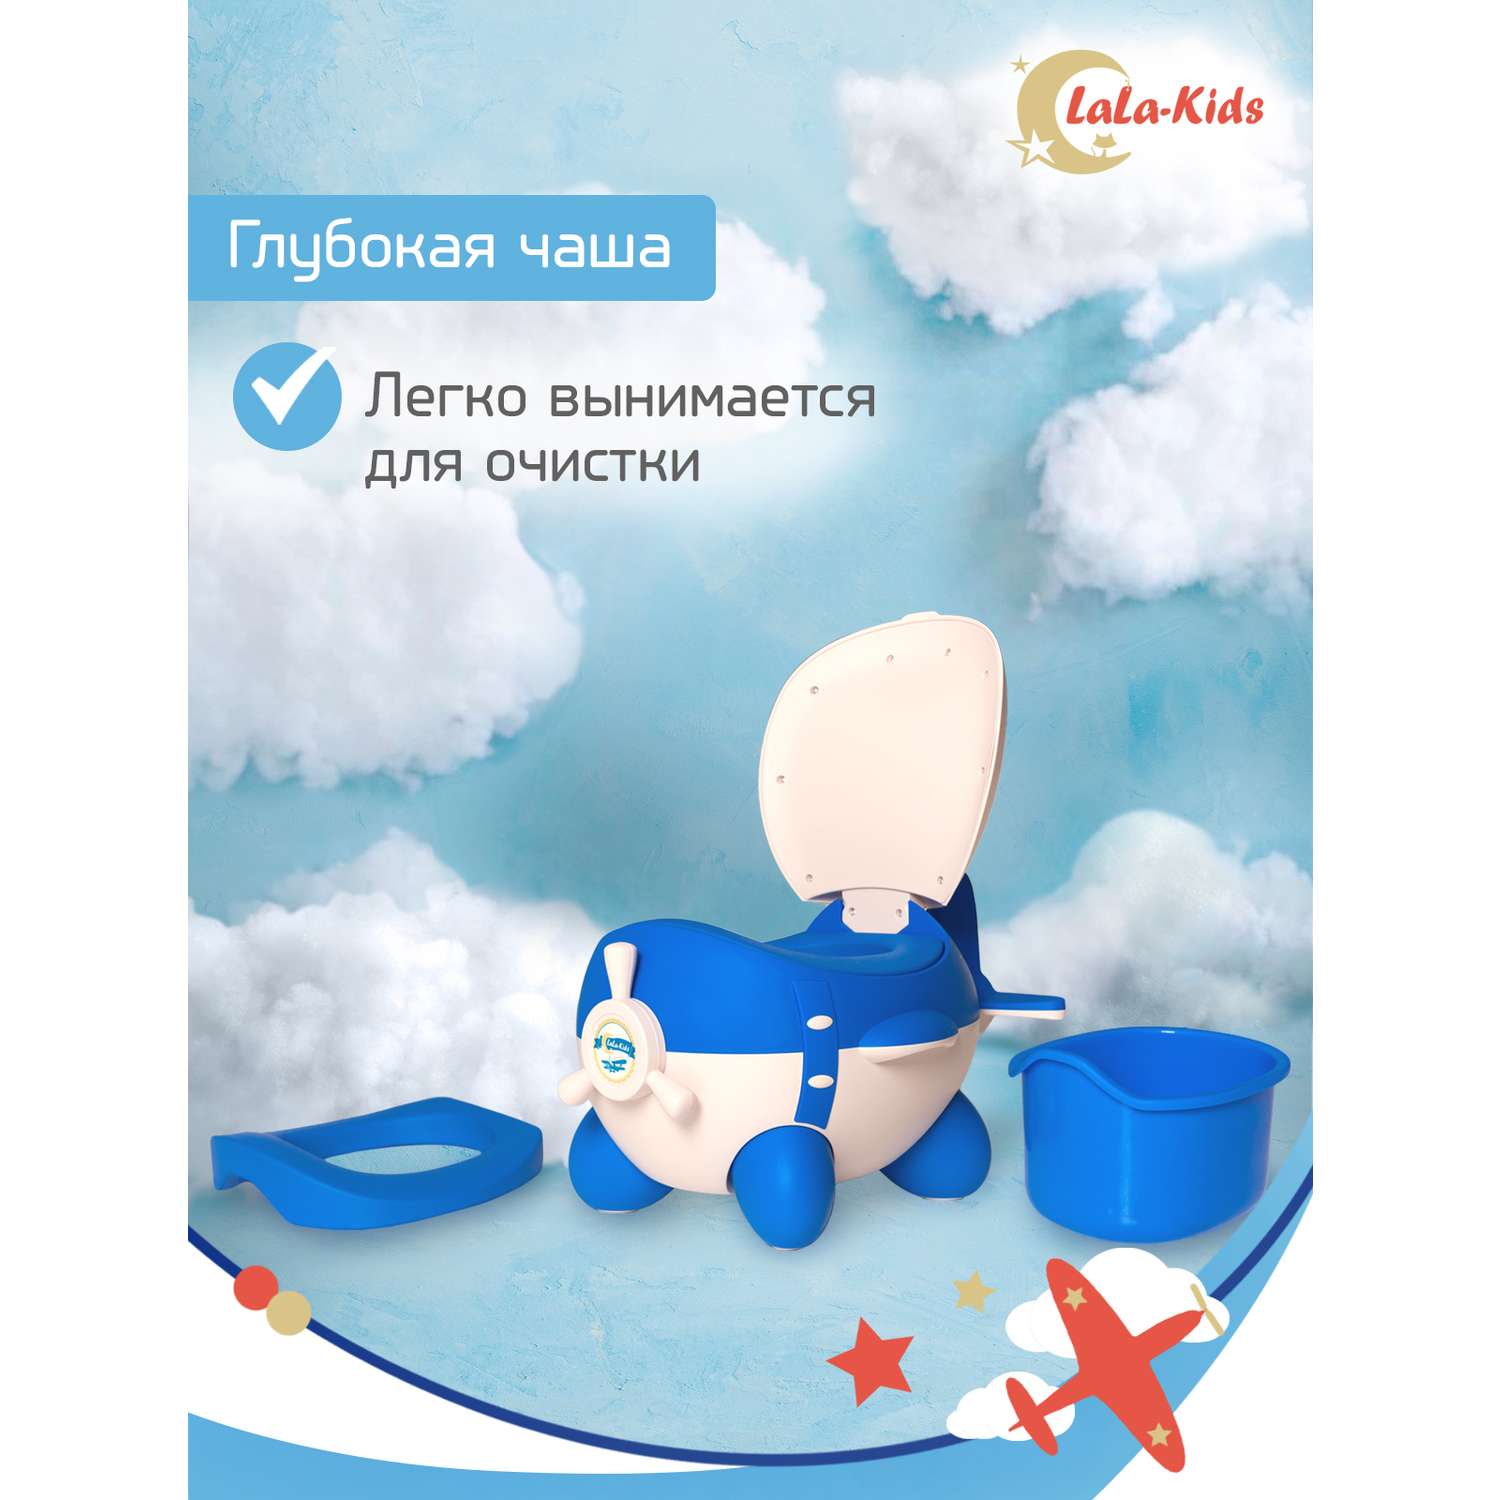 Горшок LaLa-Kids с мягким сиденьем Самолет голубой - фото 6